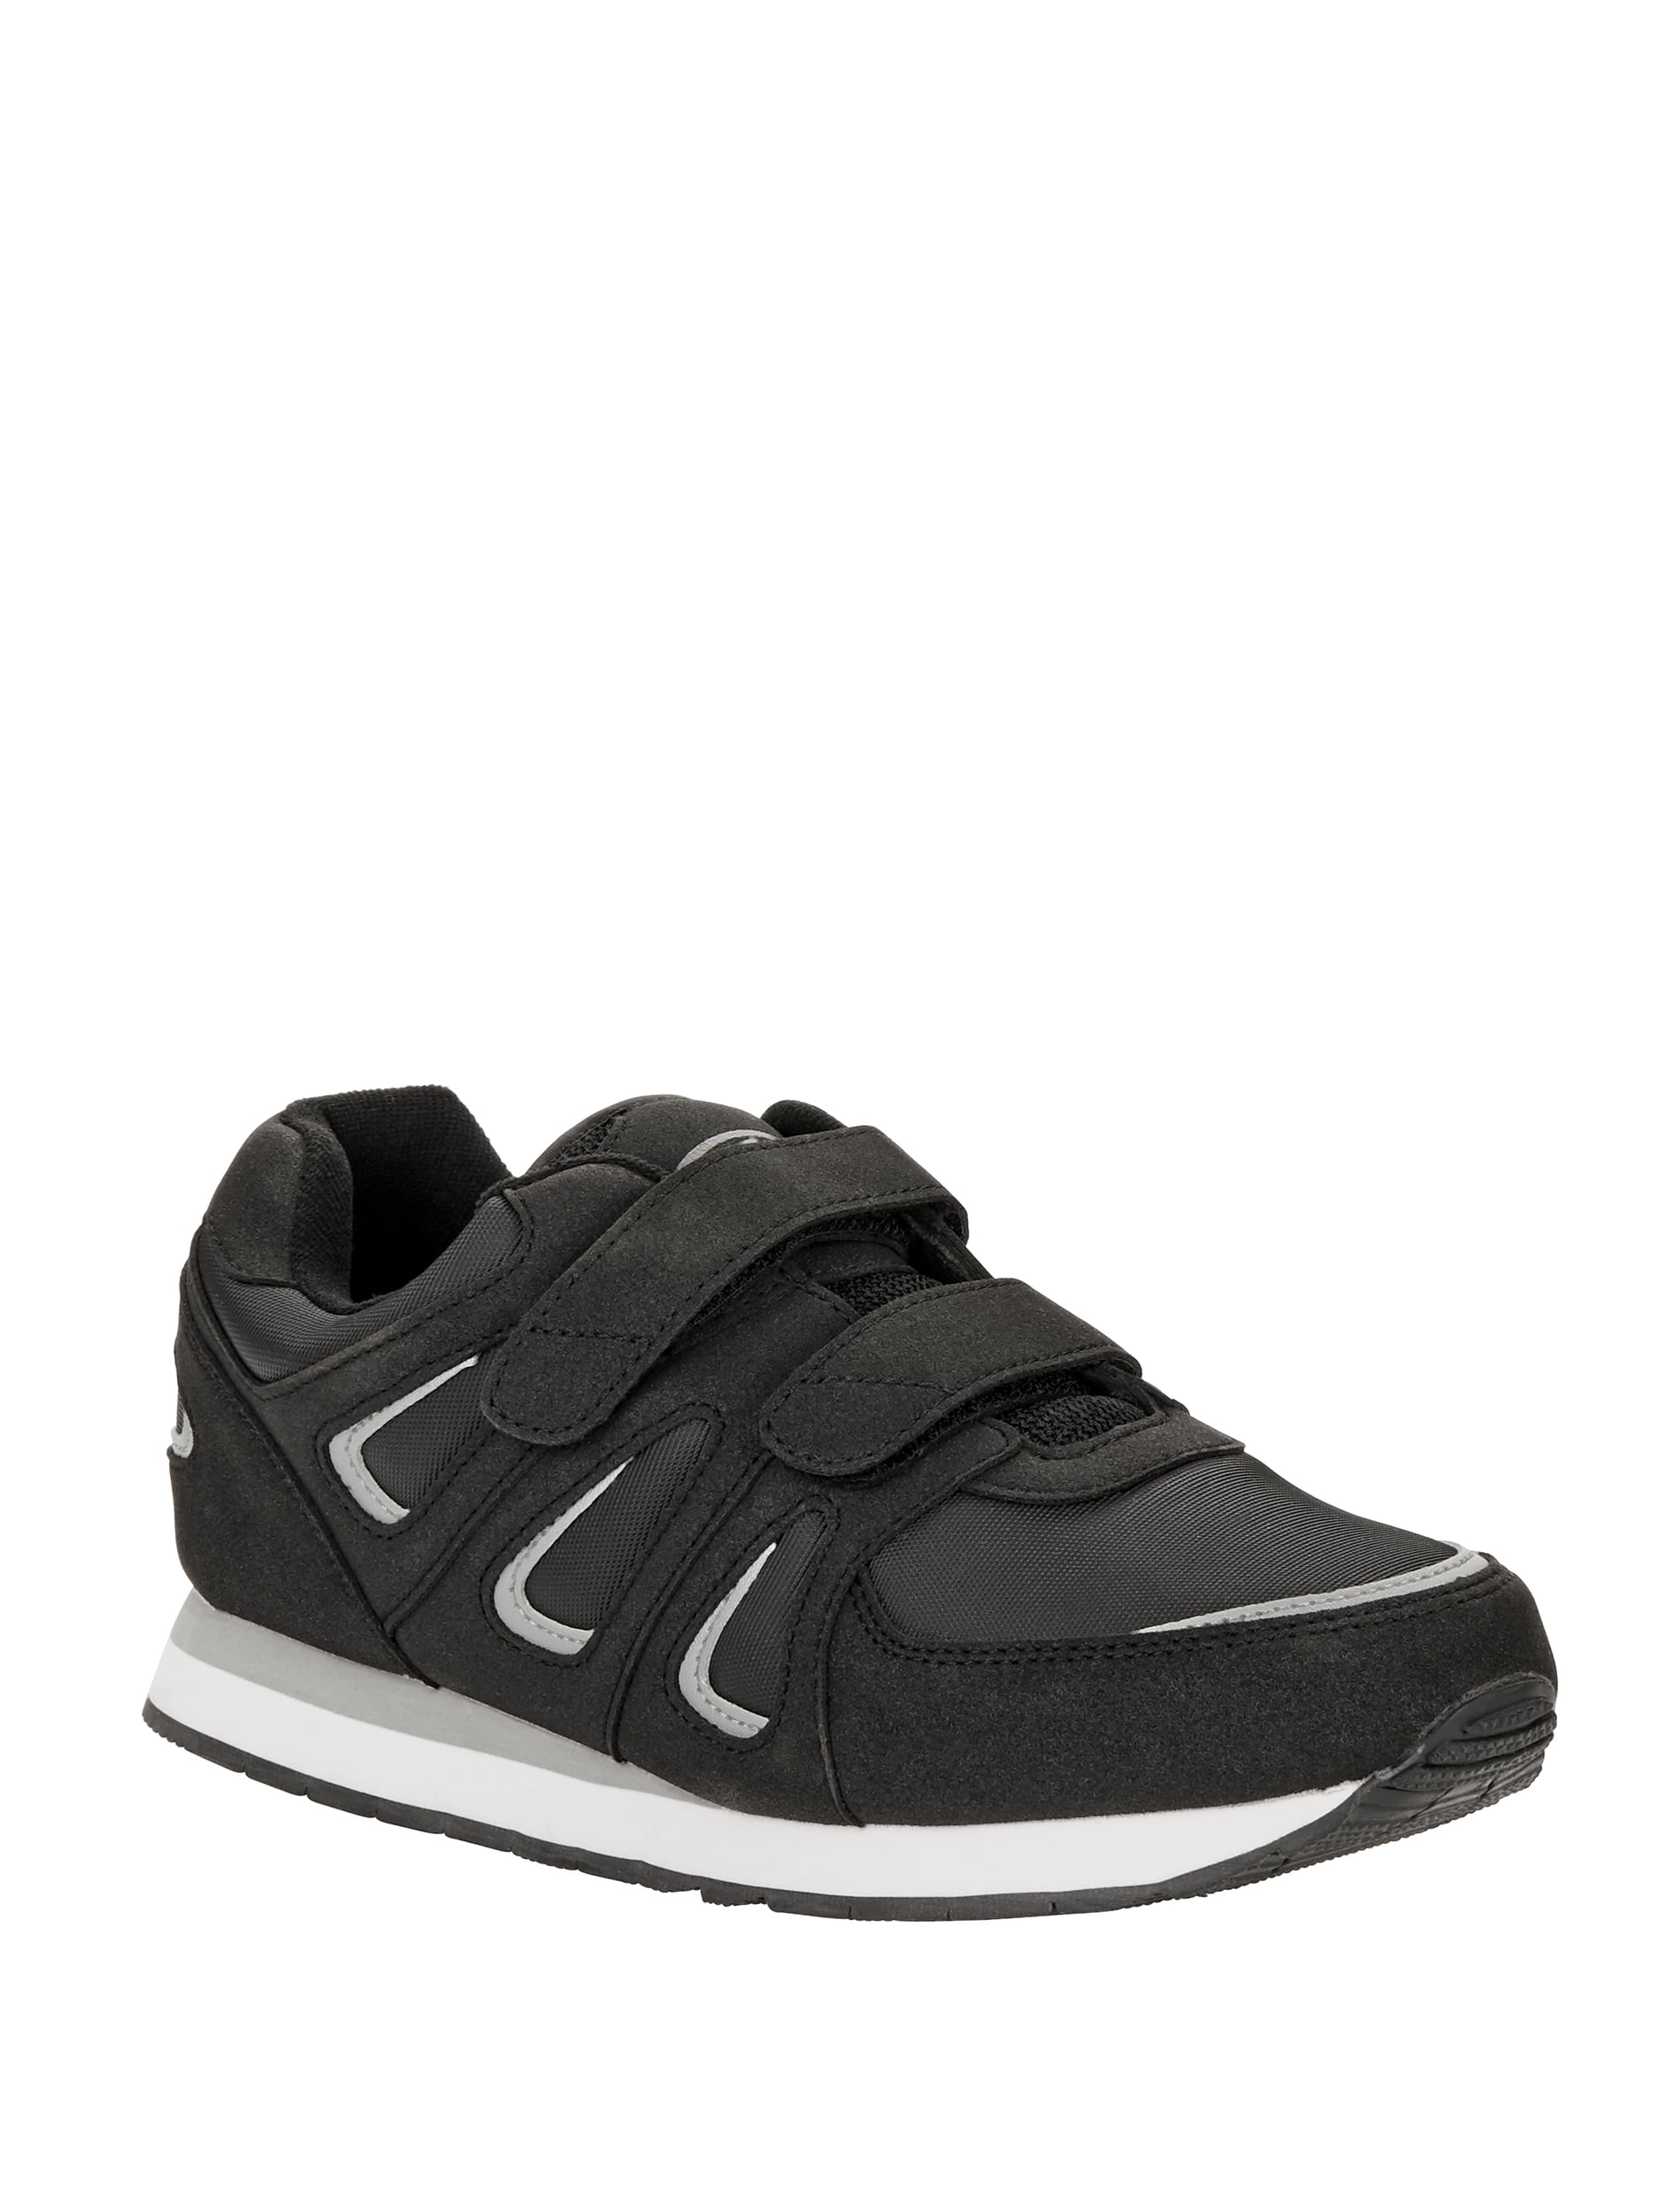 black velcro tennis shoes